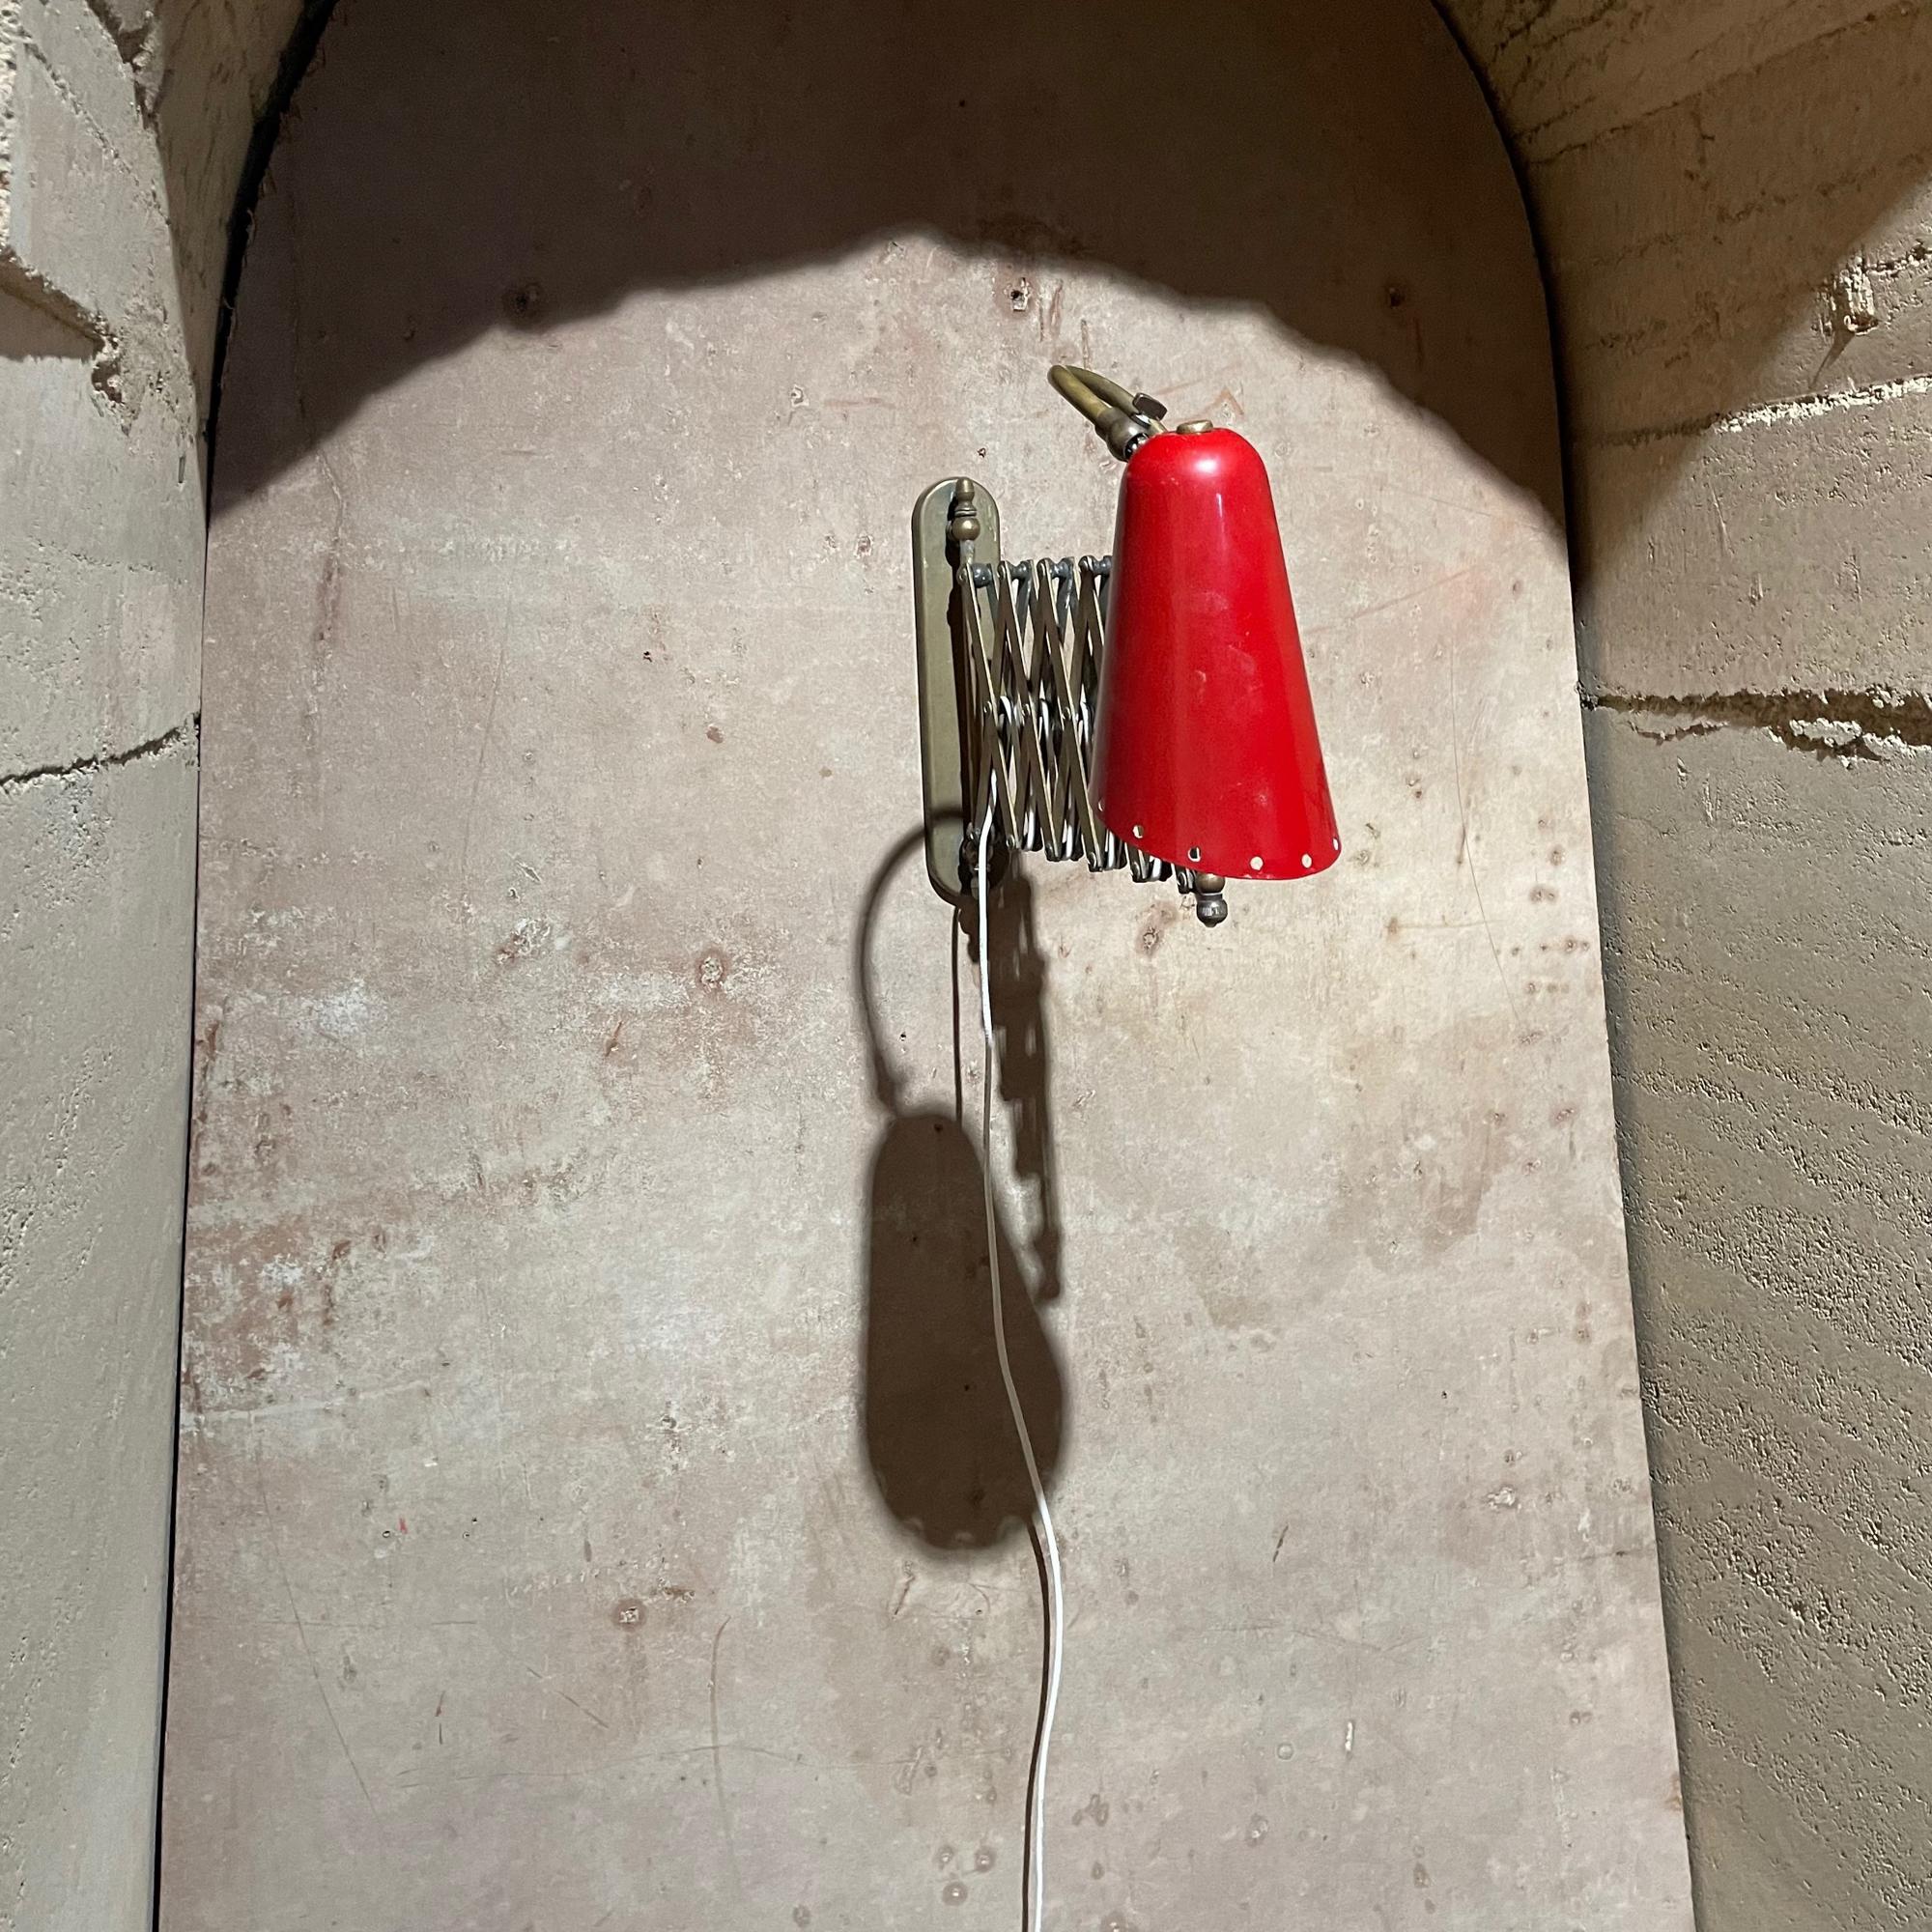 Italienische Messing Rot Schere Wandleuchte Sconce ITALIEN 1950er Jahre
Roter perforierter Kegelschirm. Unmarkiert. Nach dem Vorbild von Stilnovo.
31 voll ausgefahren, 16 geschlossen 11 h x 4,5 breit Zoll
Original unrestauriert Vintage Preowned